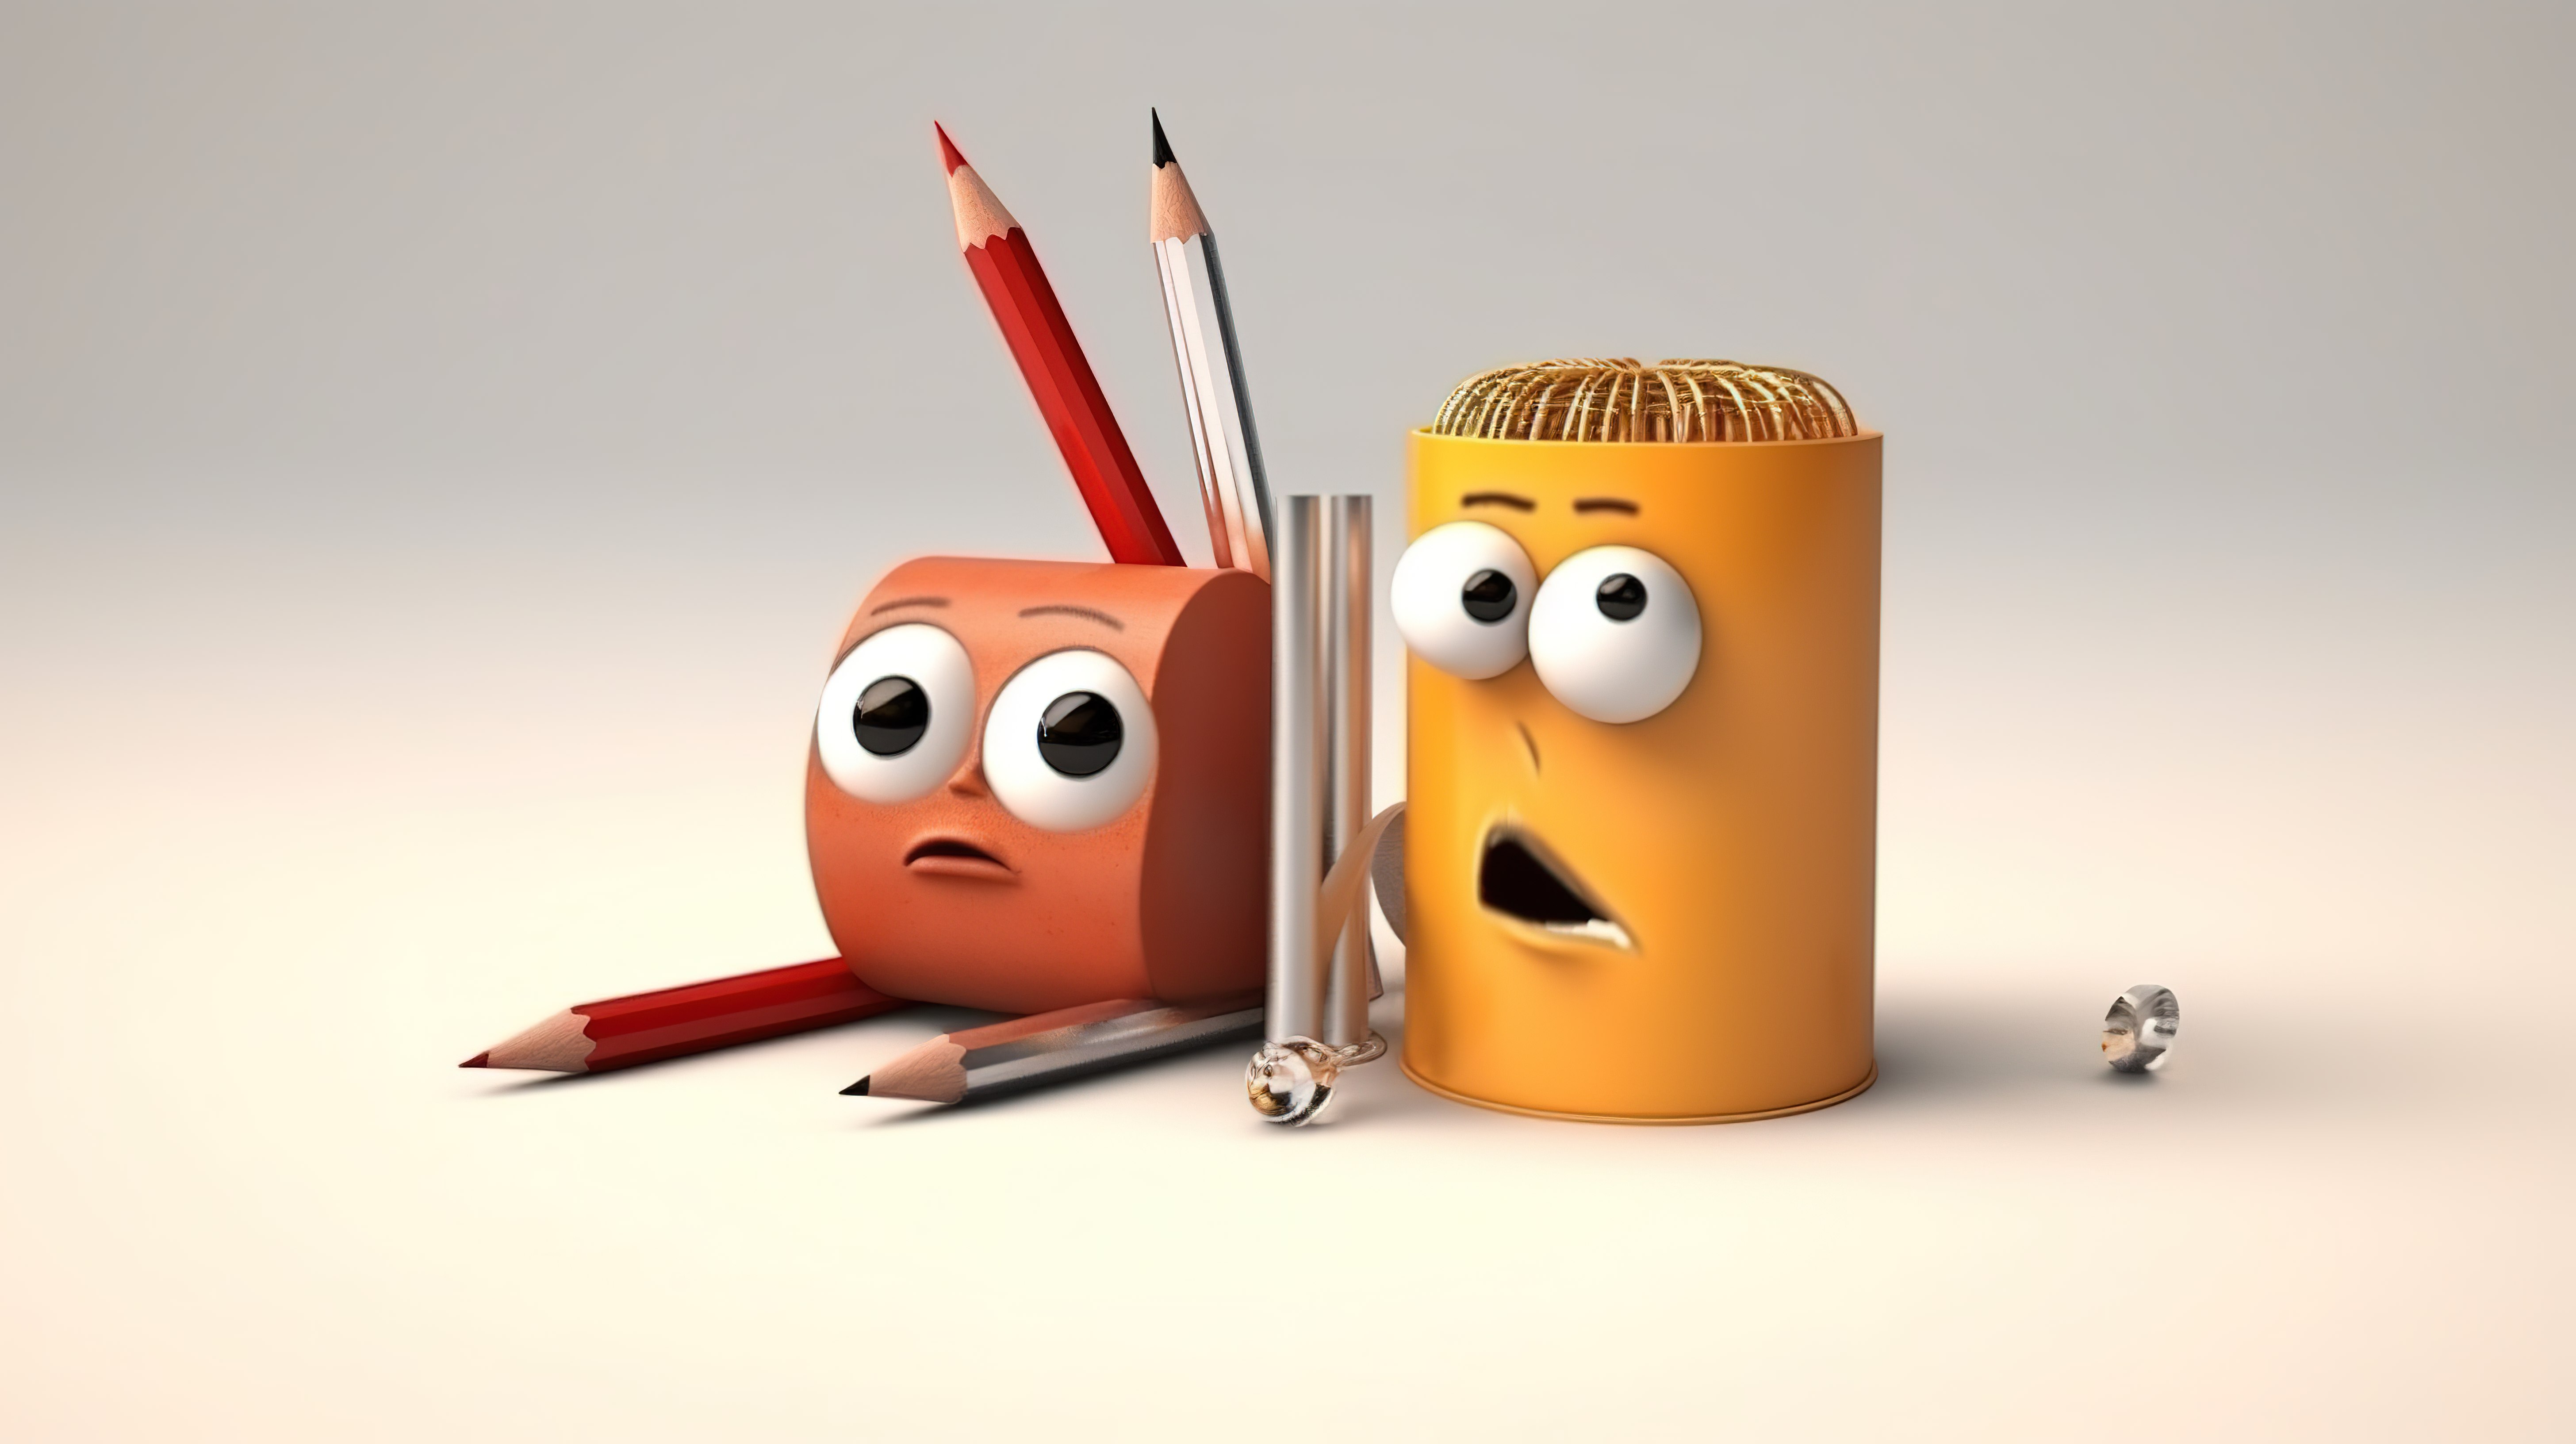 有趣的铅笔和卷笔刀二人组的异想天开的 3D 插图图片